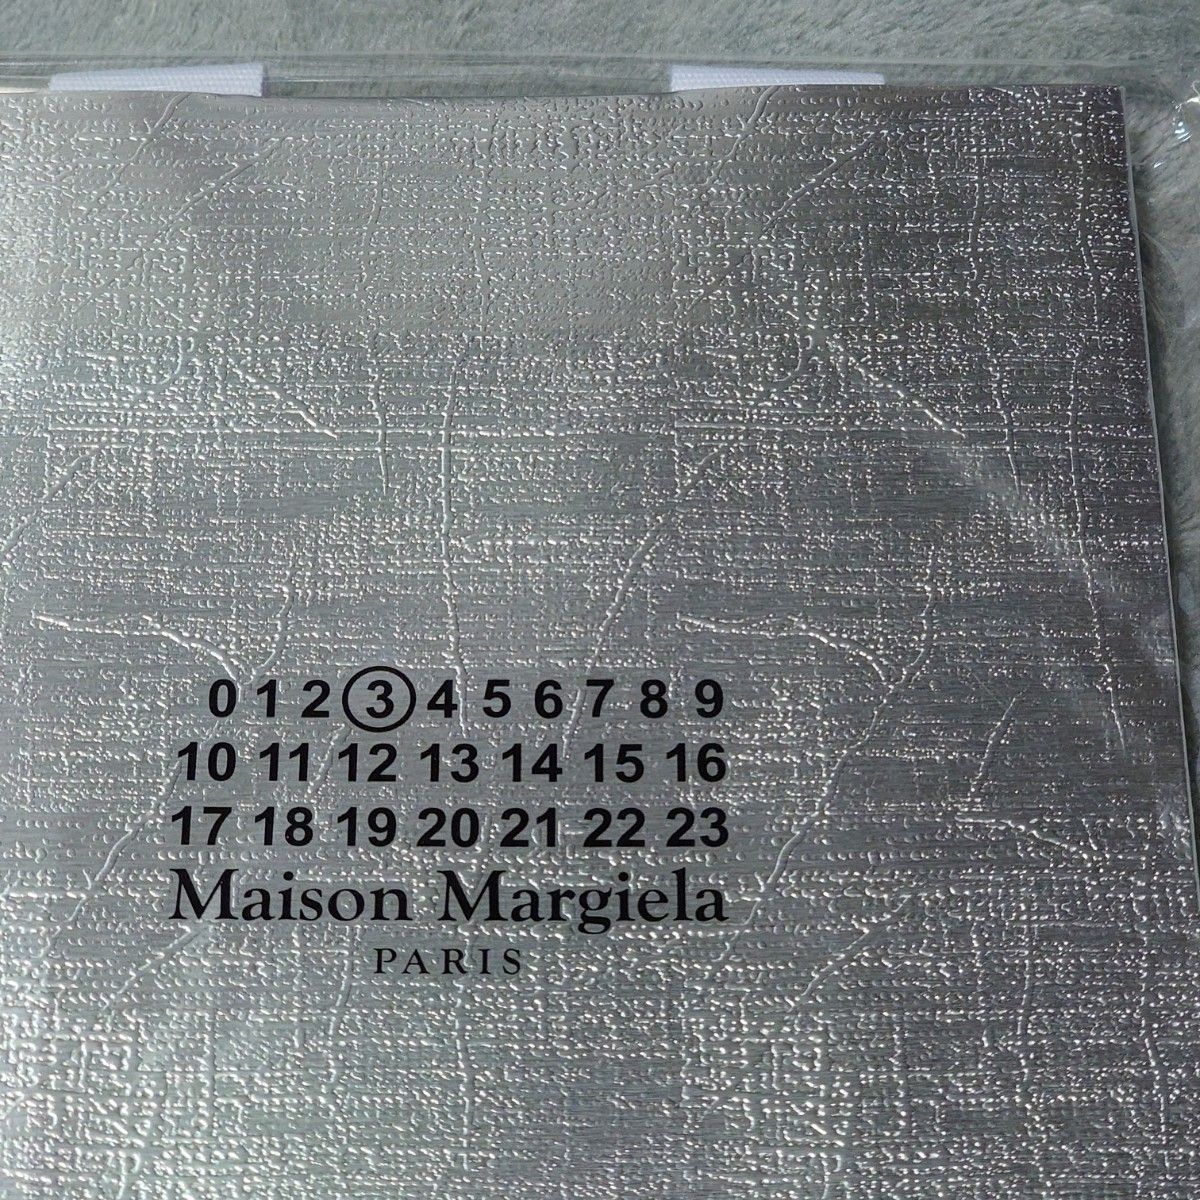 Maison Margielaショッパー ショッピングバッグ ショップ袋